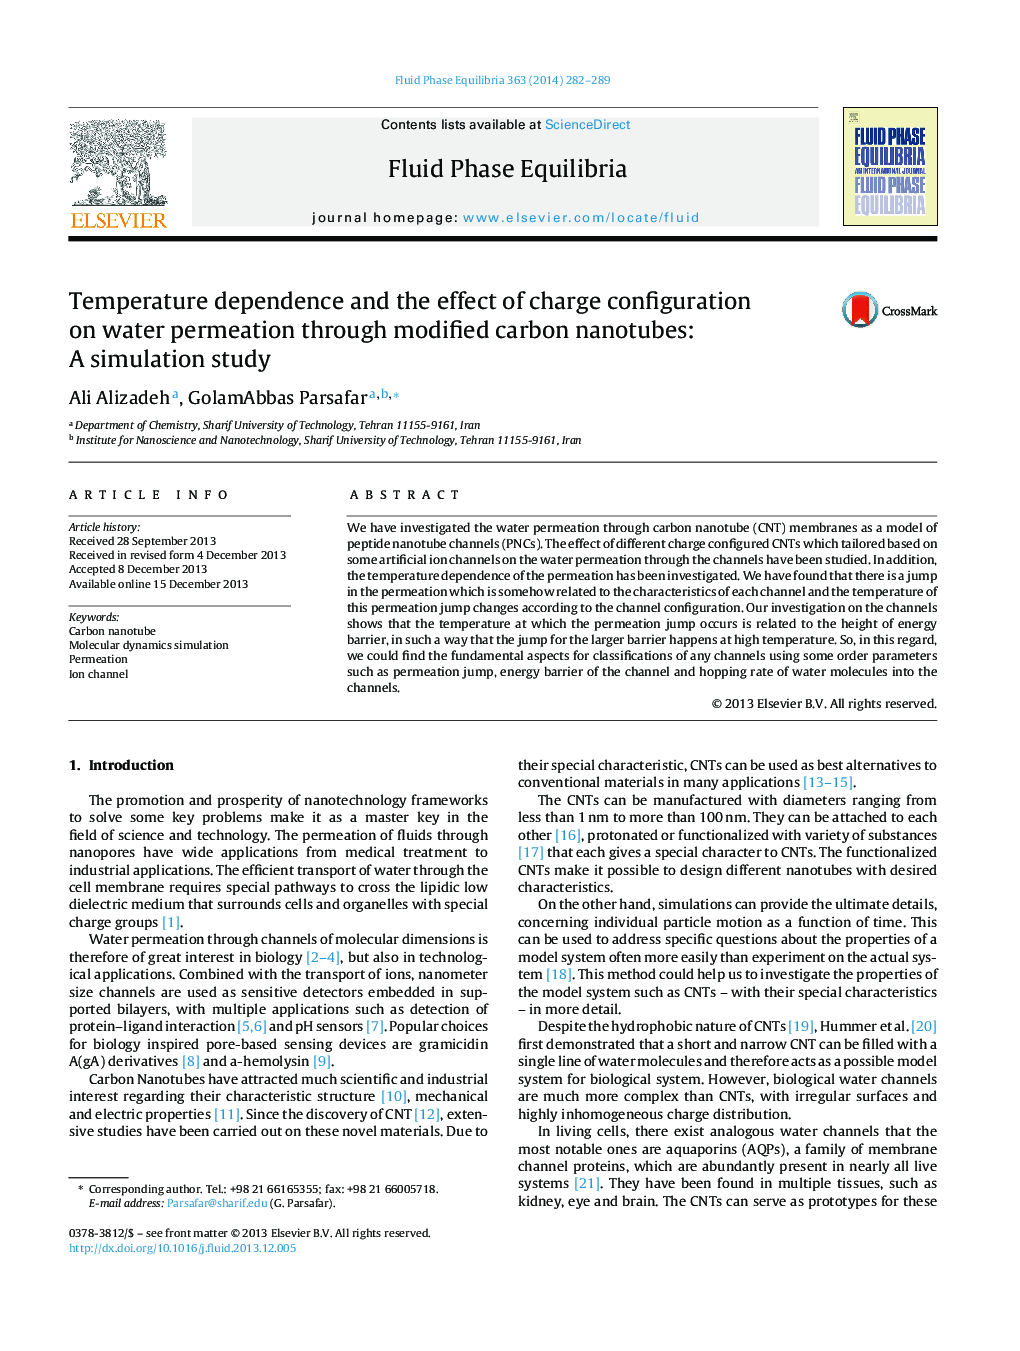 وابستگی دما و اثر پیکربندی شارژ در نفوذ آب از طریق نانولوله های کربنی اصلاح شده: یک مطالعه شبیه سازی 